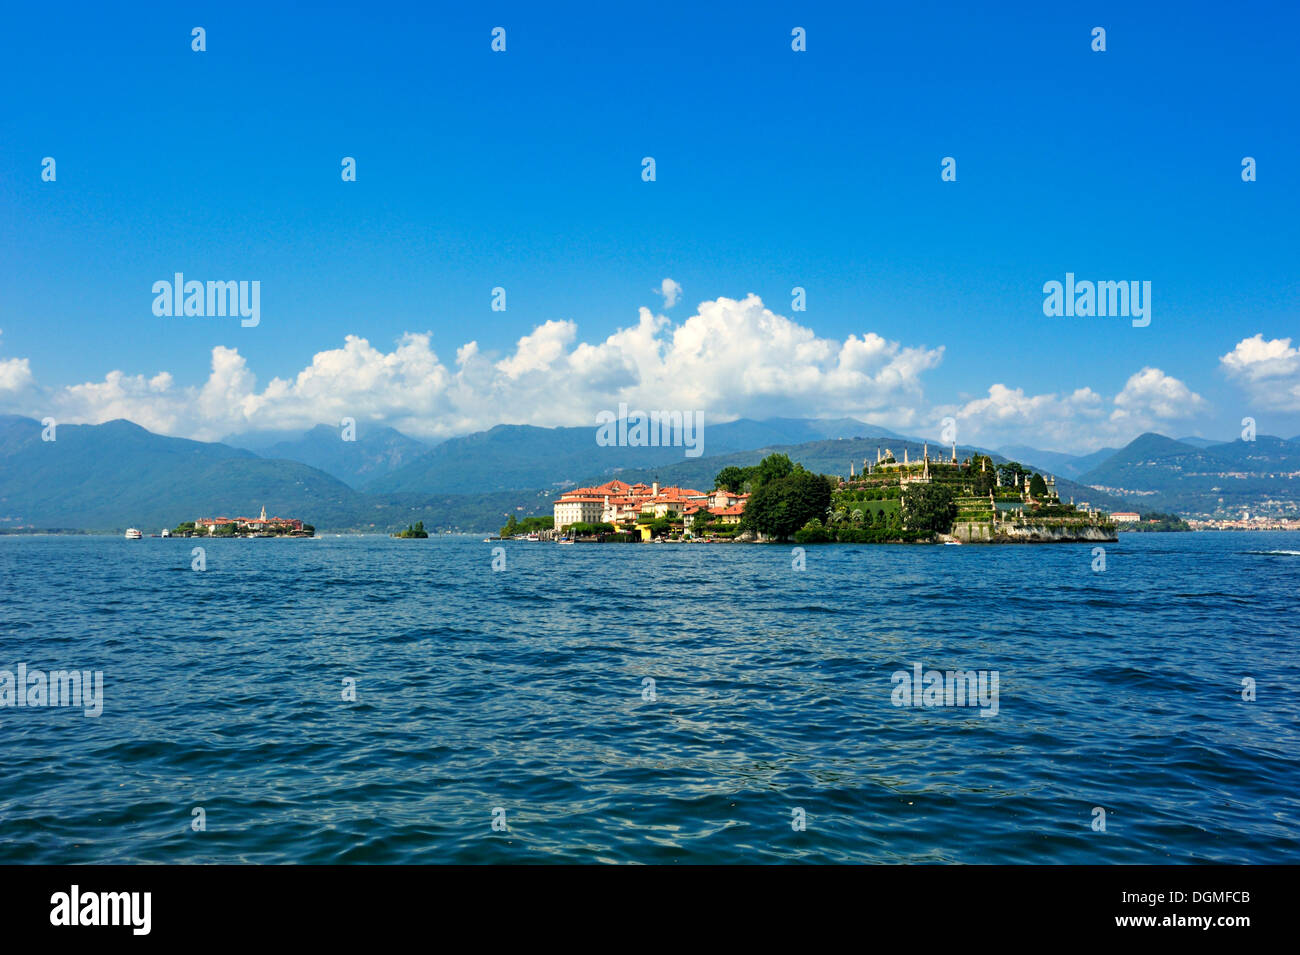 Isola Bella and Isola dei Pescatori islands, Borromean Islands, Stresa, Lago Maggiore lake, Piedmont, Italy, Europe Stock Photo